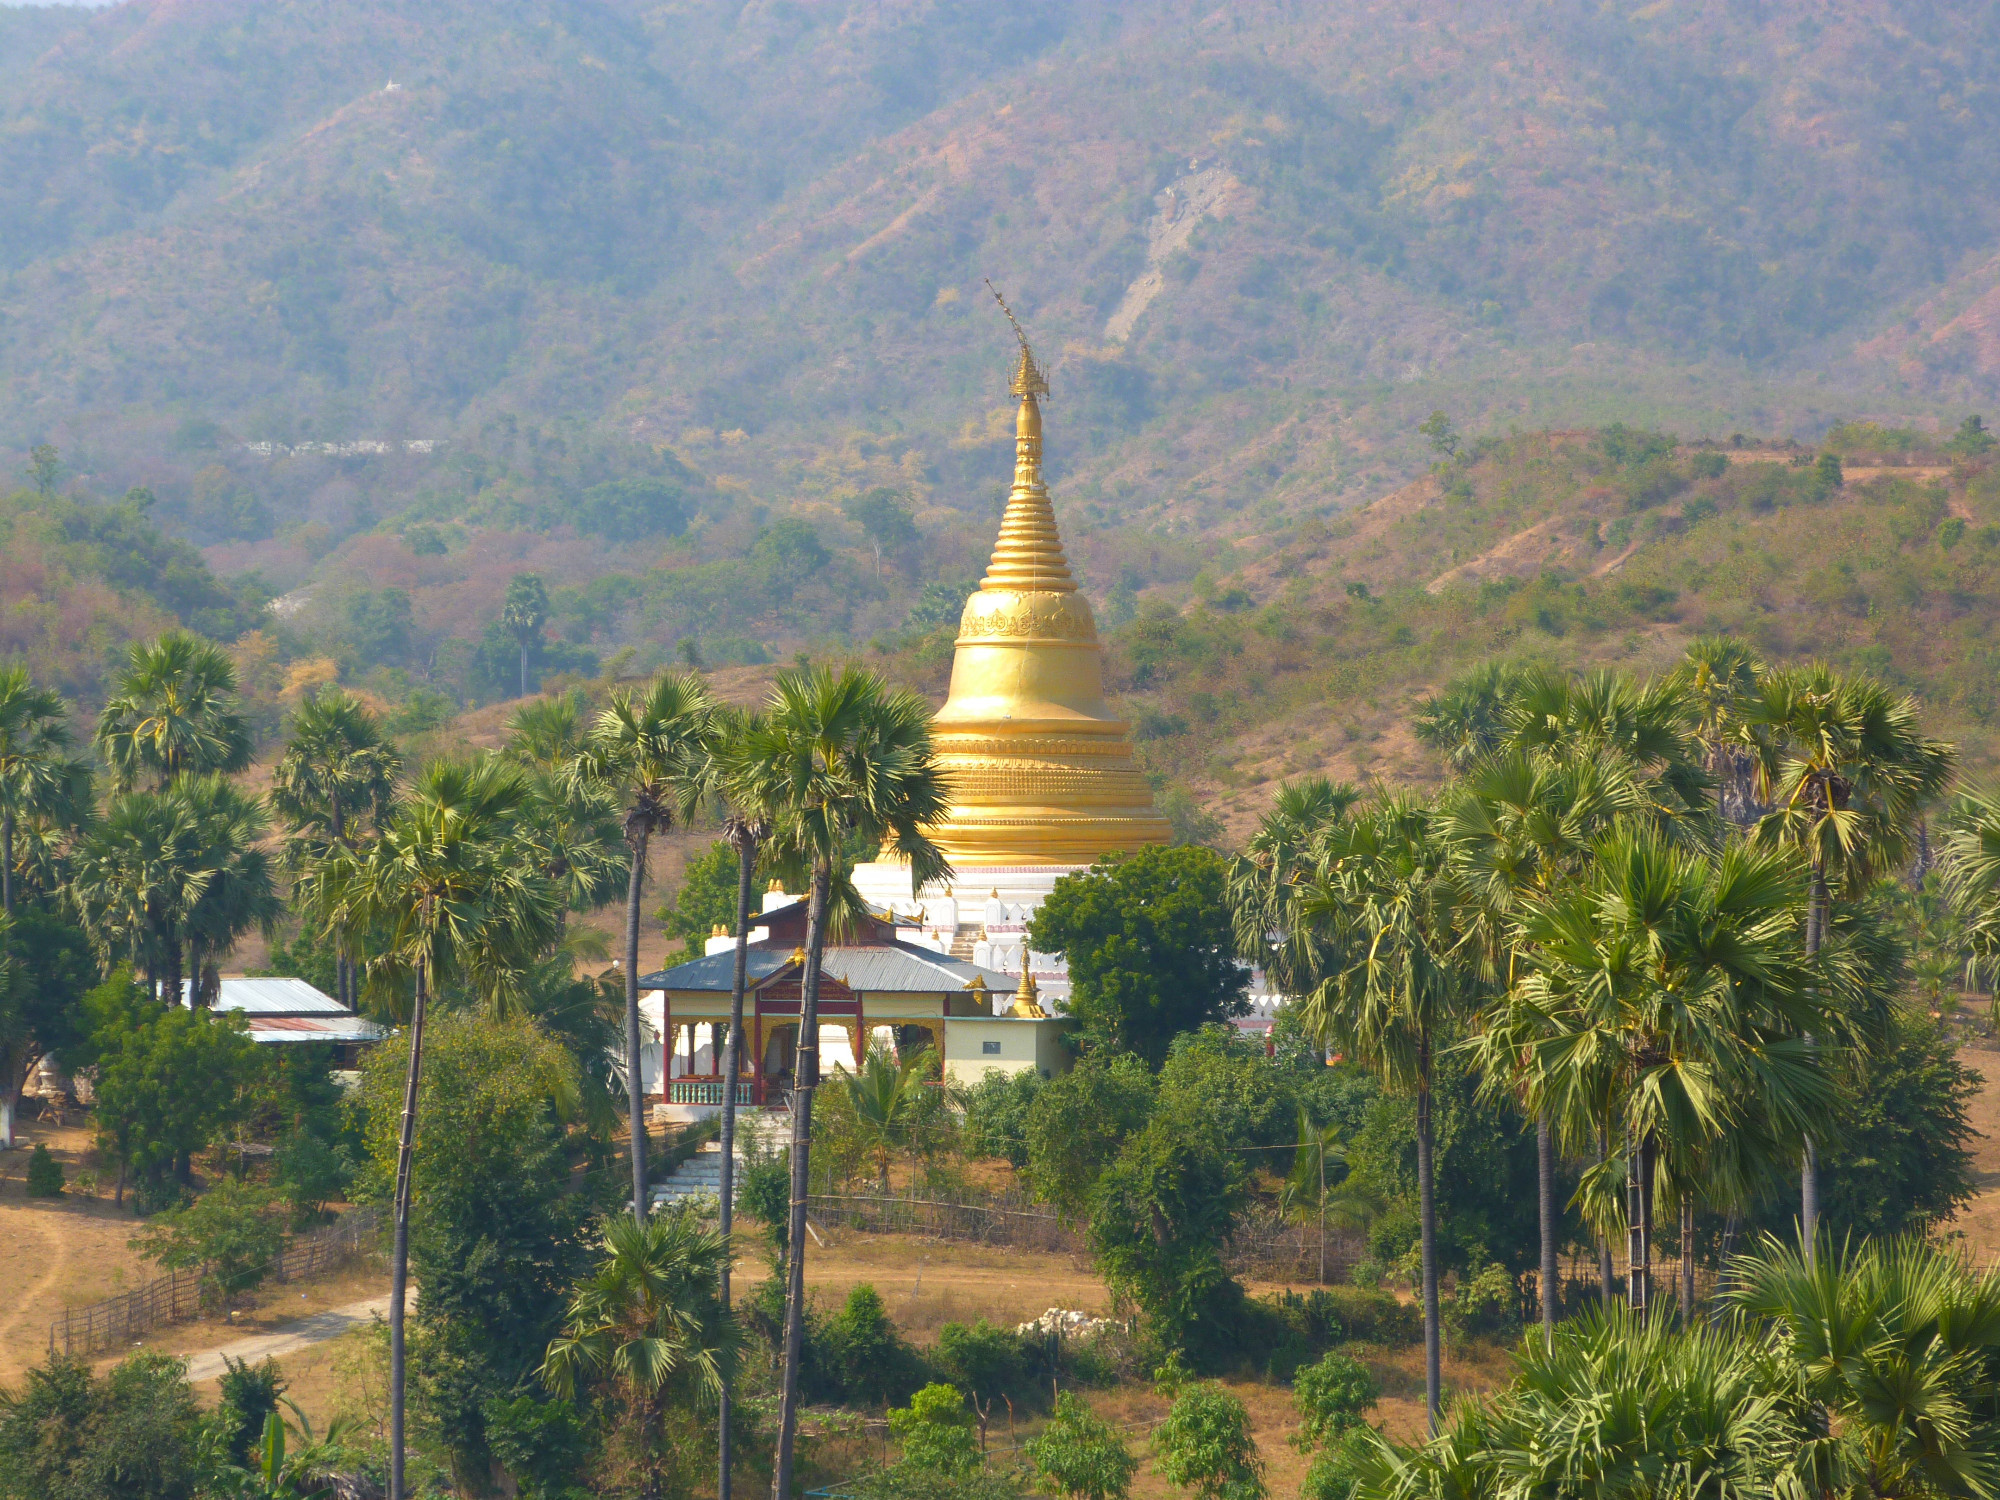 View from Temple Hsinbyume Pagoda (Myatheindan Pagoda)